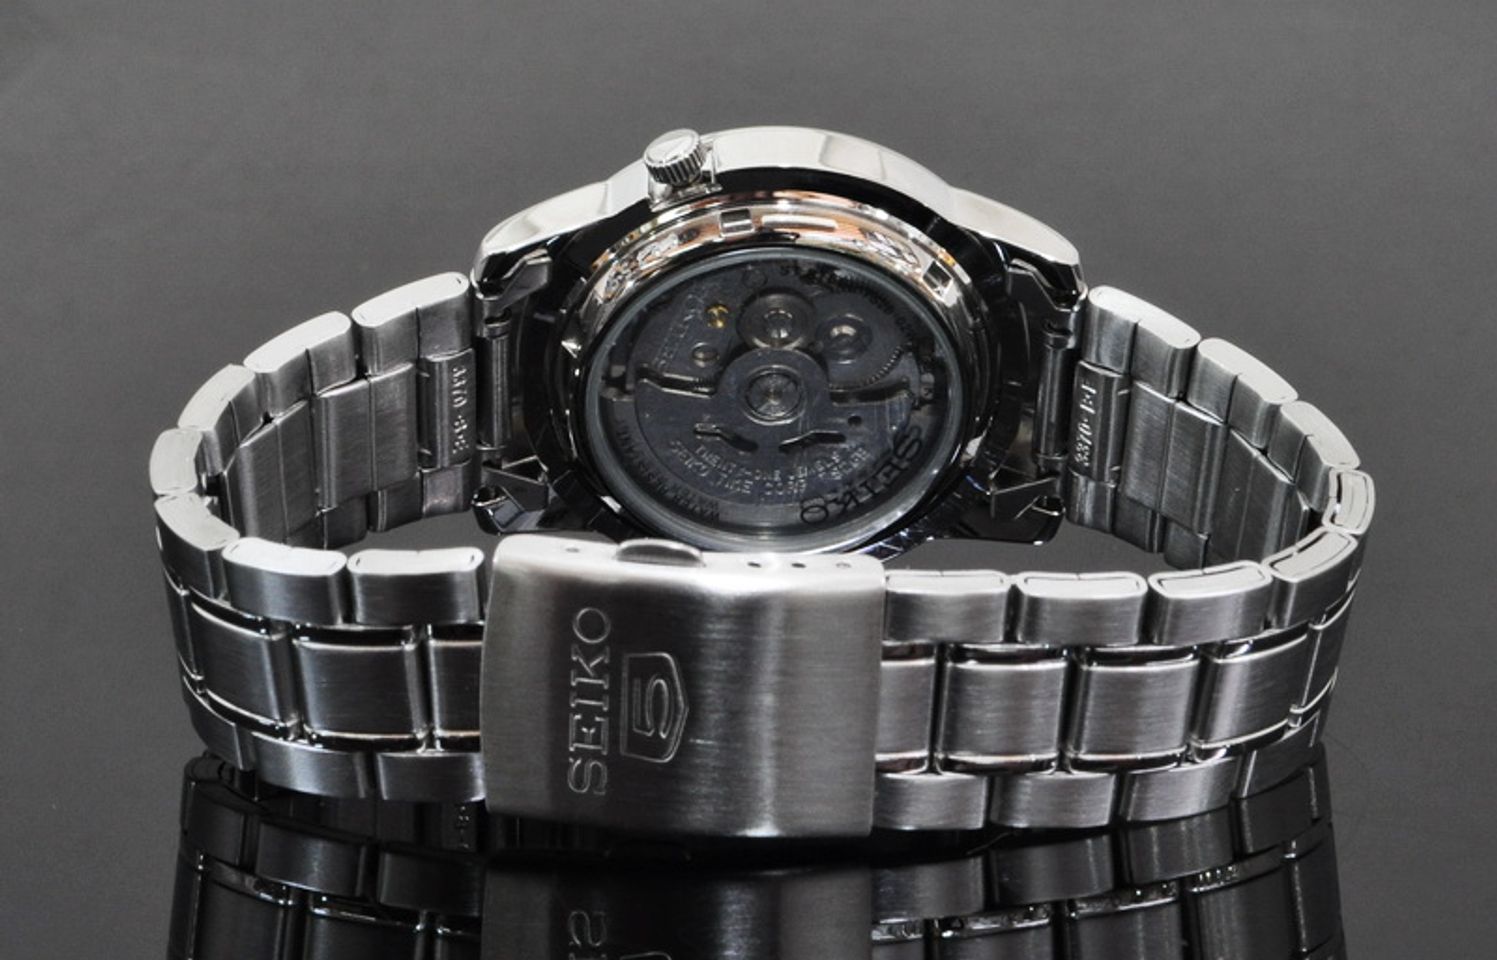 Chiếc đồng hồ Seiko nam SNKK25K1 thiết kế lộ máy sau mang đến cho bạn những trải nghiệm thú vị